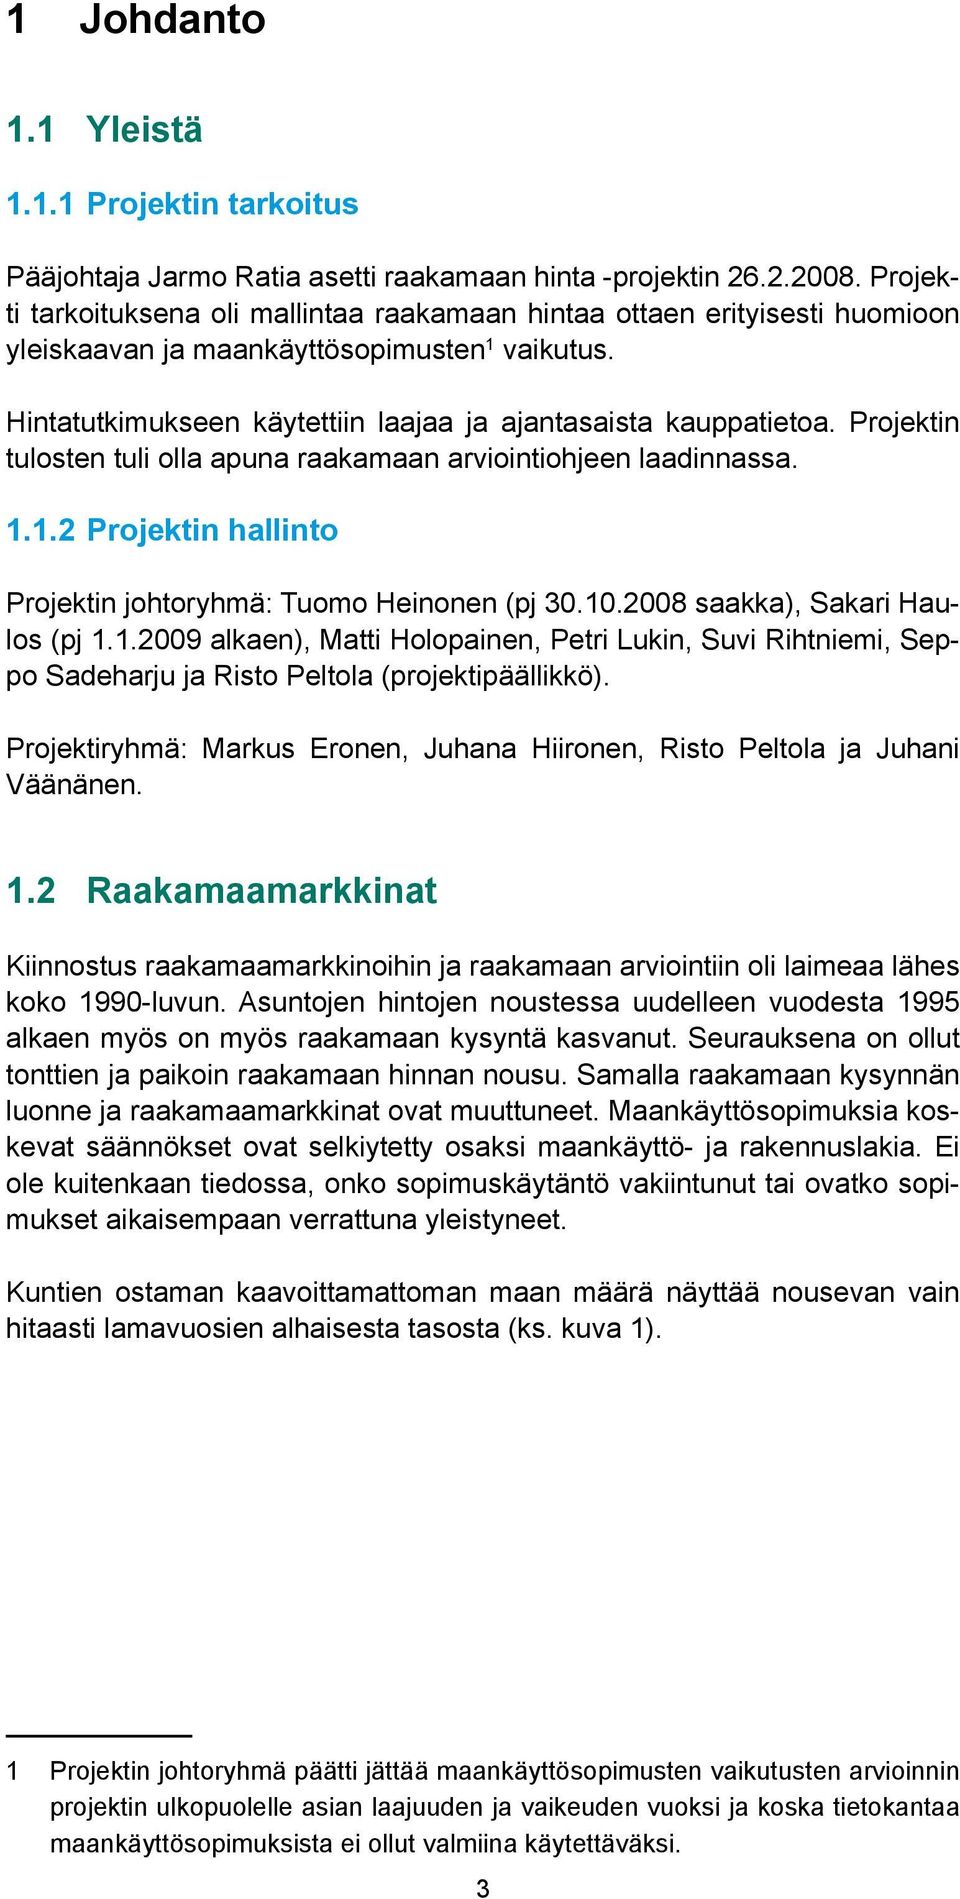 Projektin tulosten tuli olla apuna raakamaan arviointiohjeen laadinnassa. 1.1.2 Projektin hallinto Projektin johtoryhmä: Tuomo Heinonen (pj 30.10.2008 saakka), Sakari Haulos (pj 1.1.2009 alkaen), Matti Holopainen, Petri Lukin, Suvi Rihtniemi, Seppo Sadeharju ja Risto Peltola (projektipäällikkö).